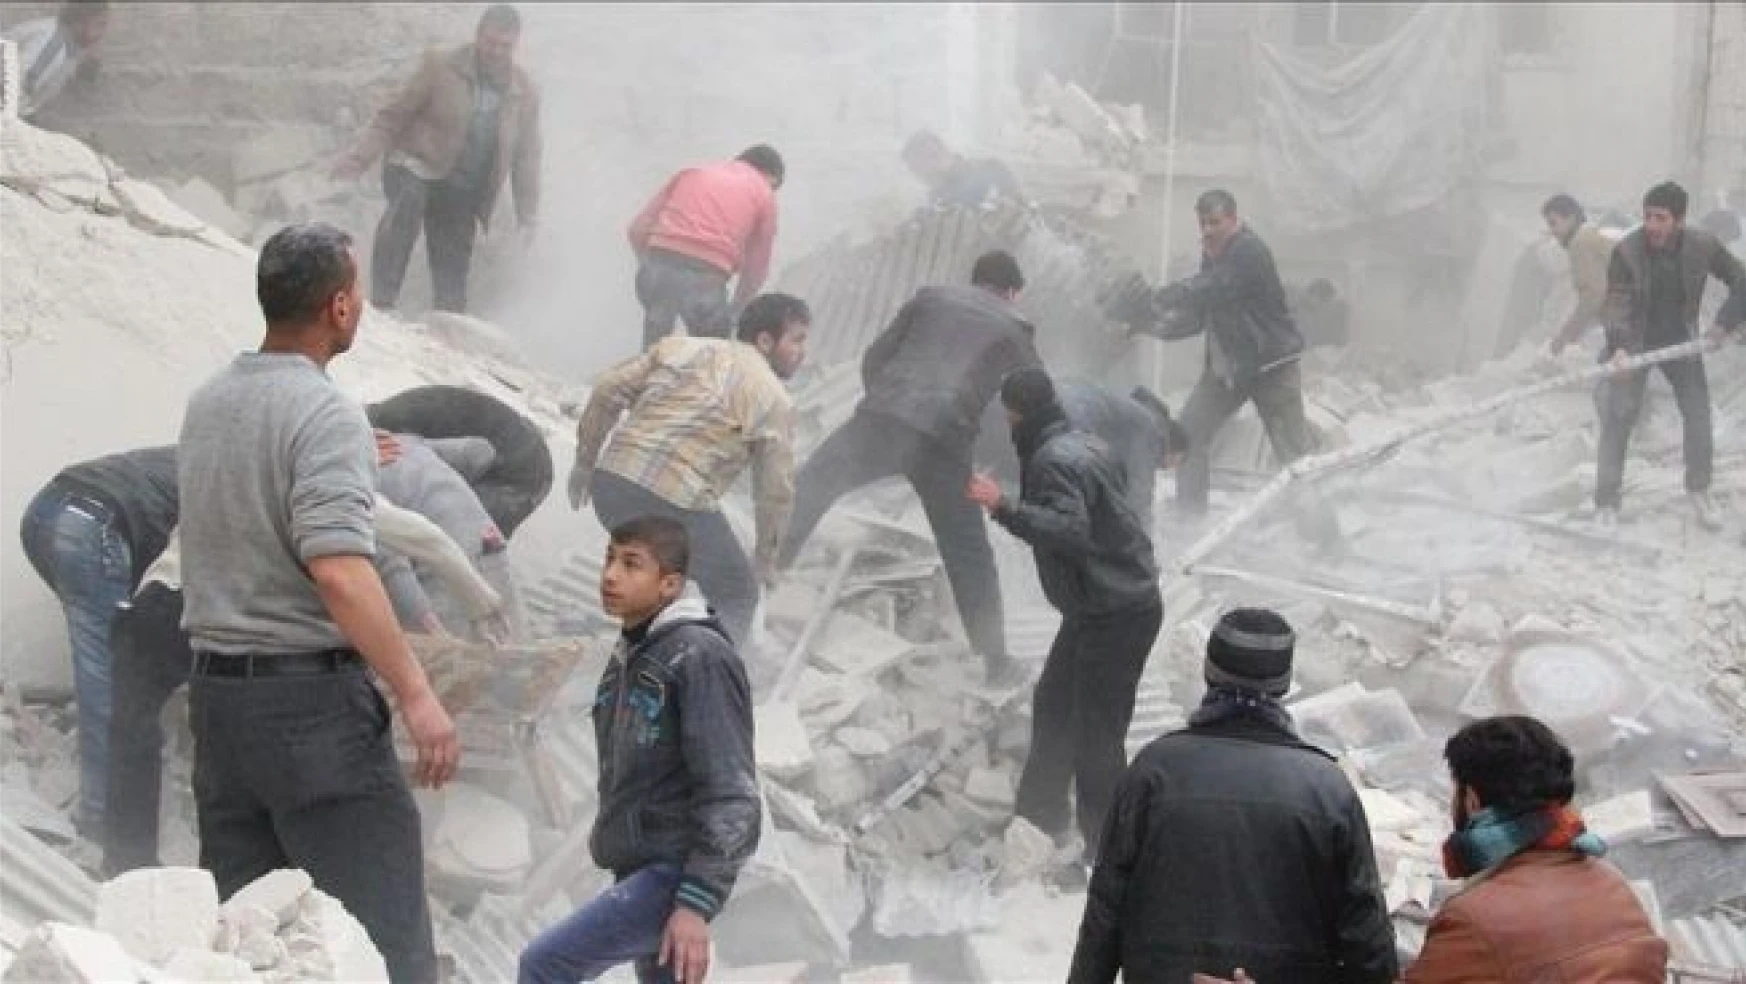 Suriye ordusundan 'zehirli gaz' saldırısı: 10 ölü